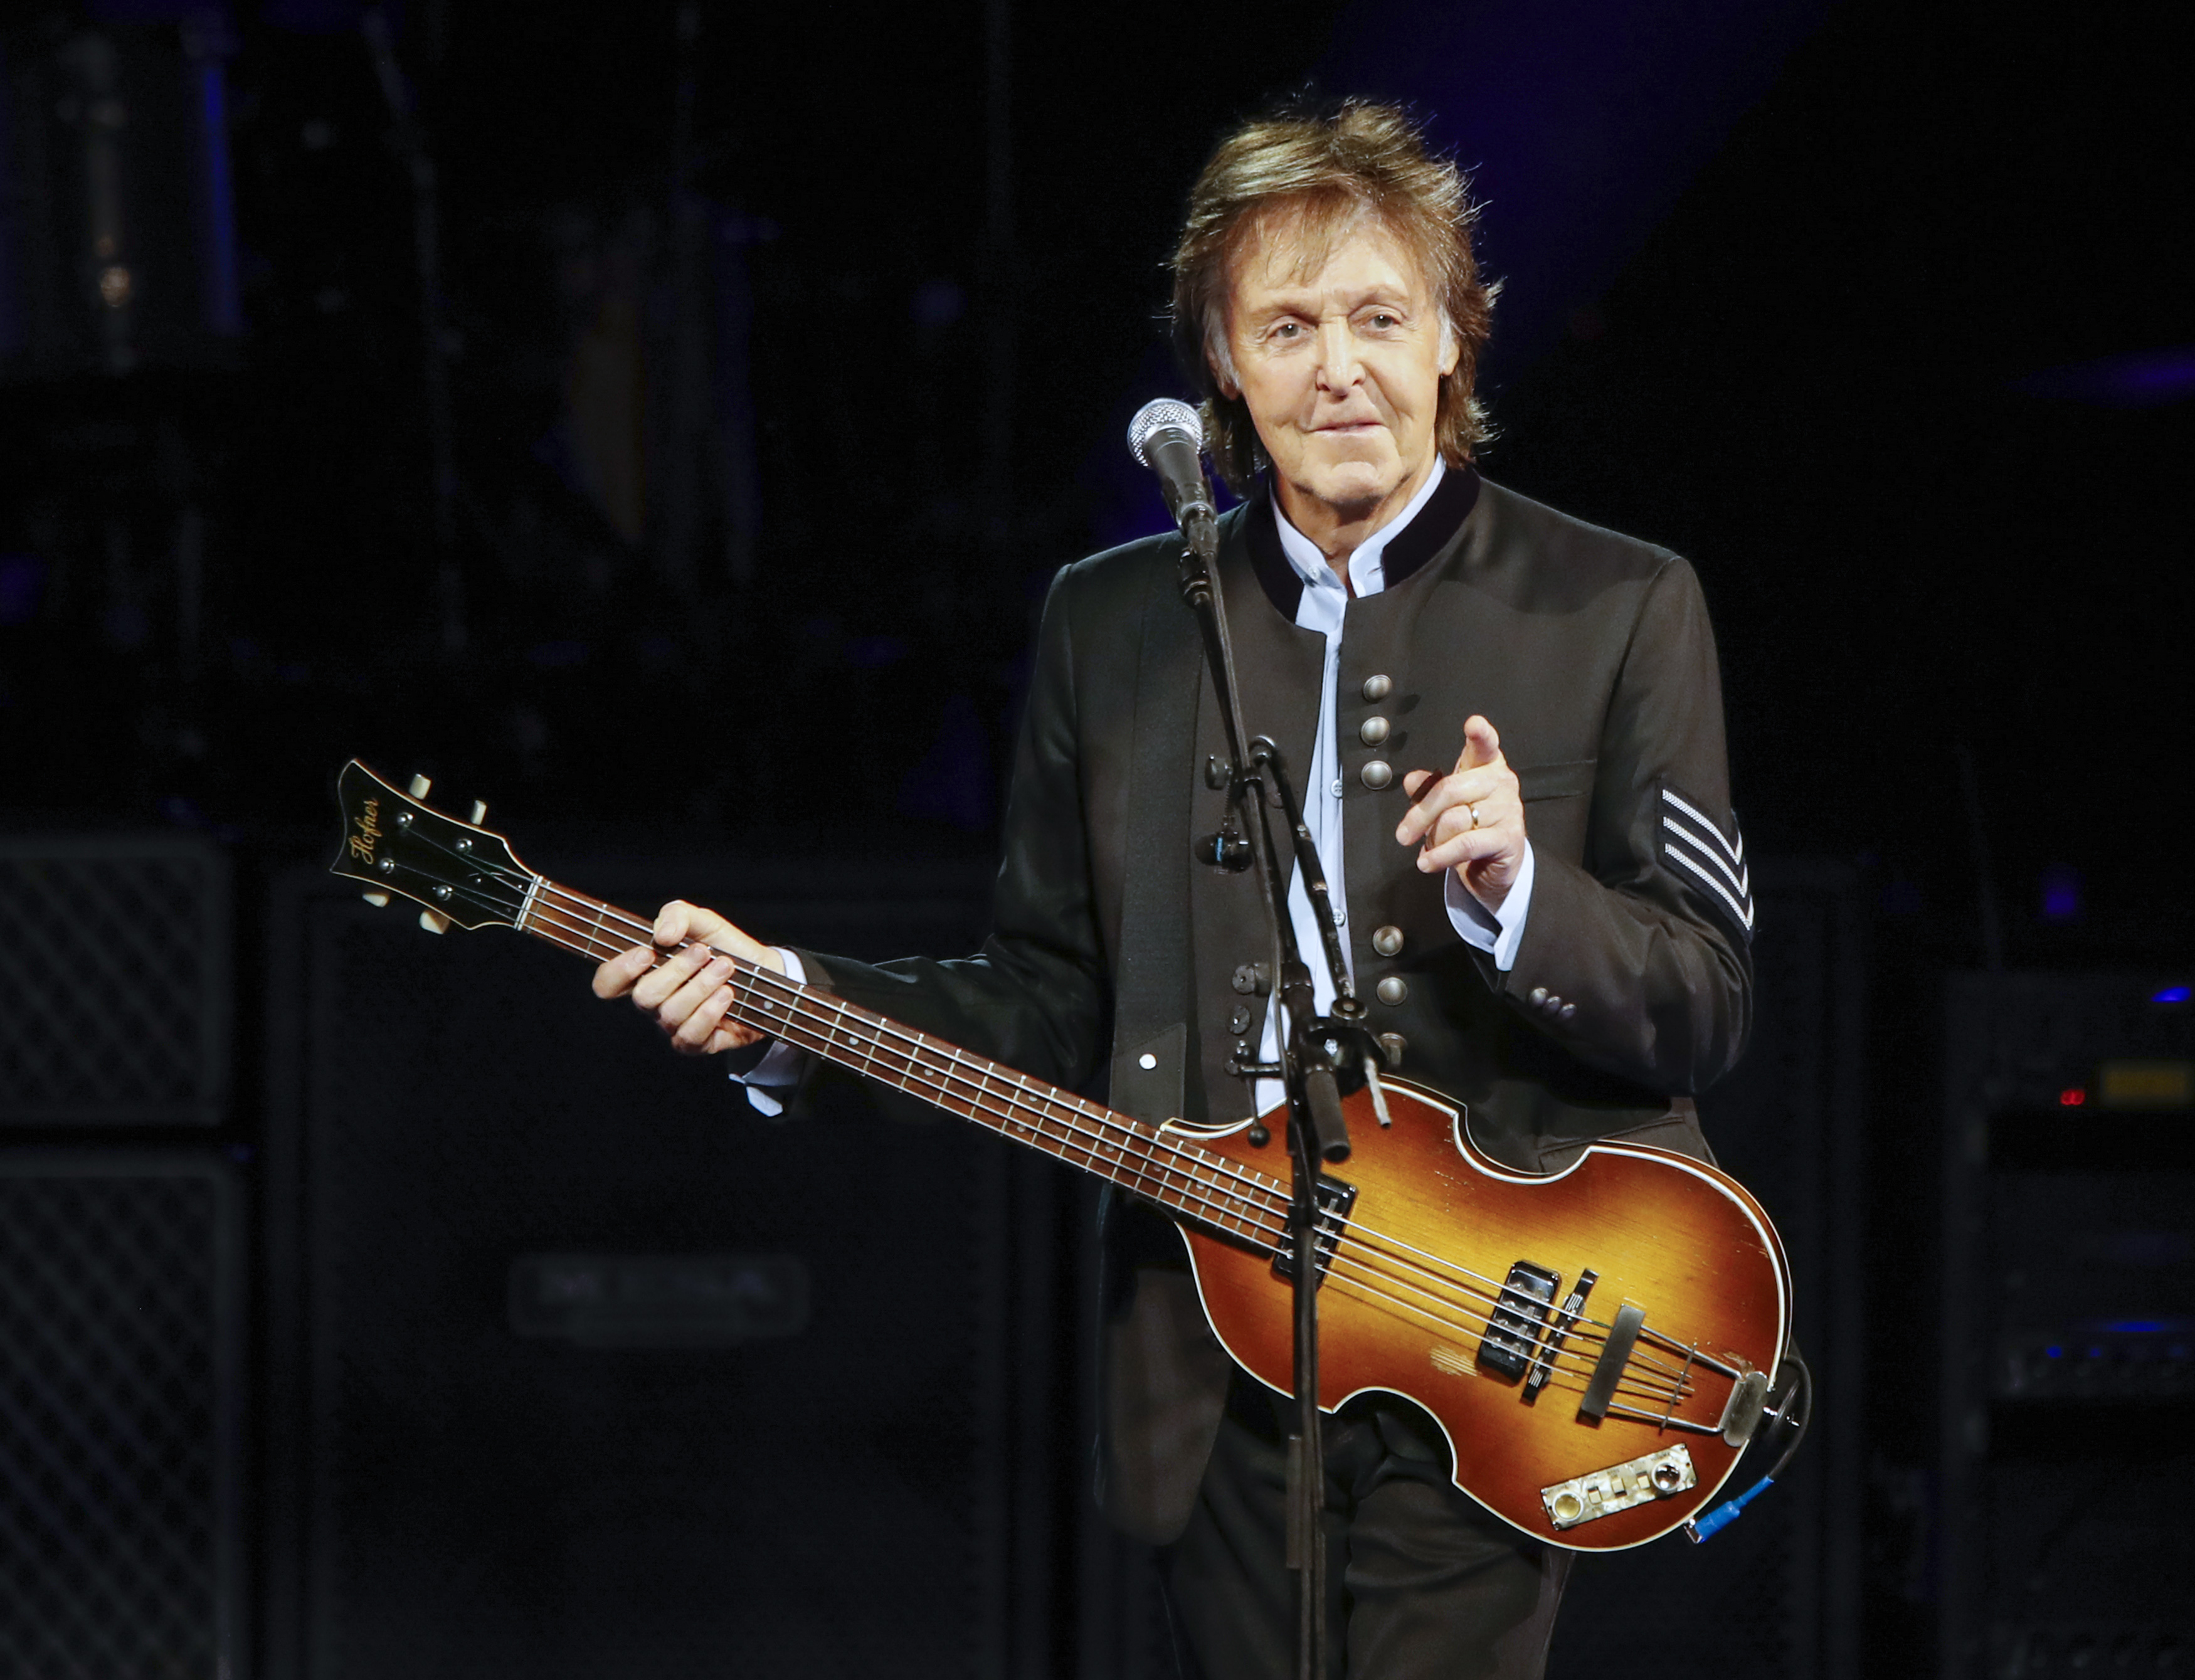 El bajo perdido de McCartney: La búsqueda del tesoro musical que desapareció hace más de 50 años